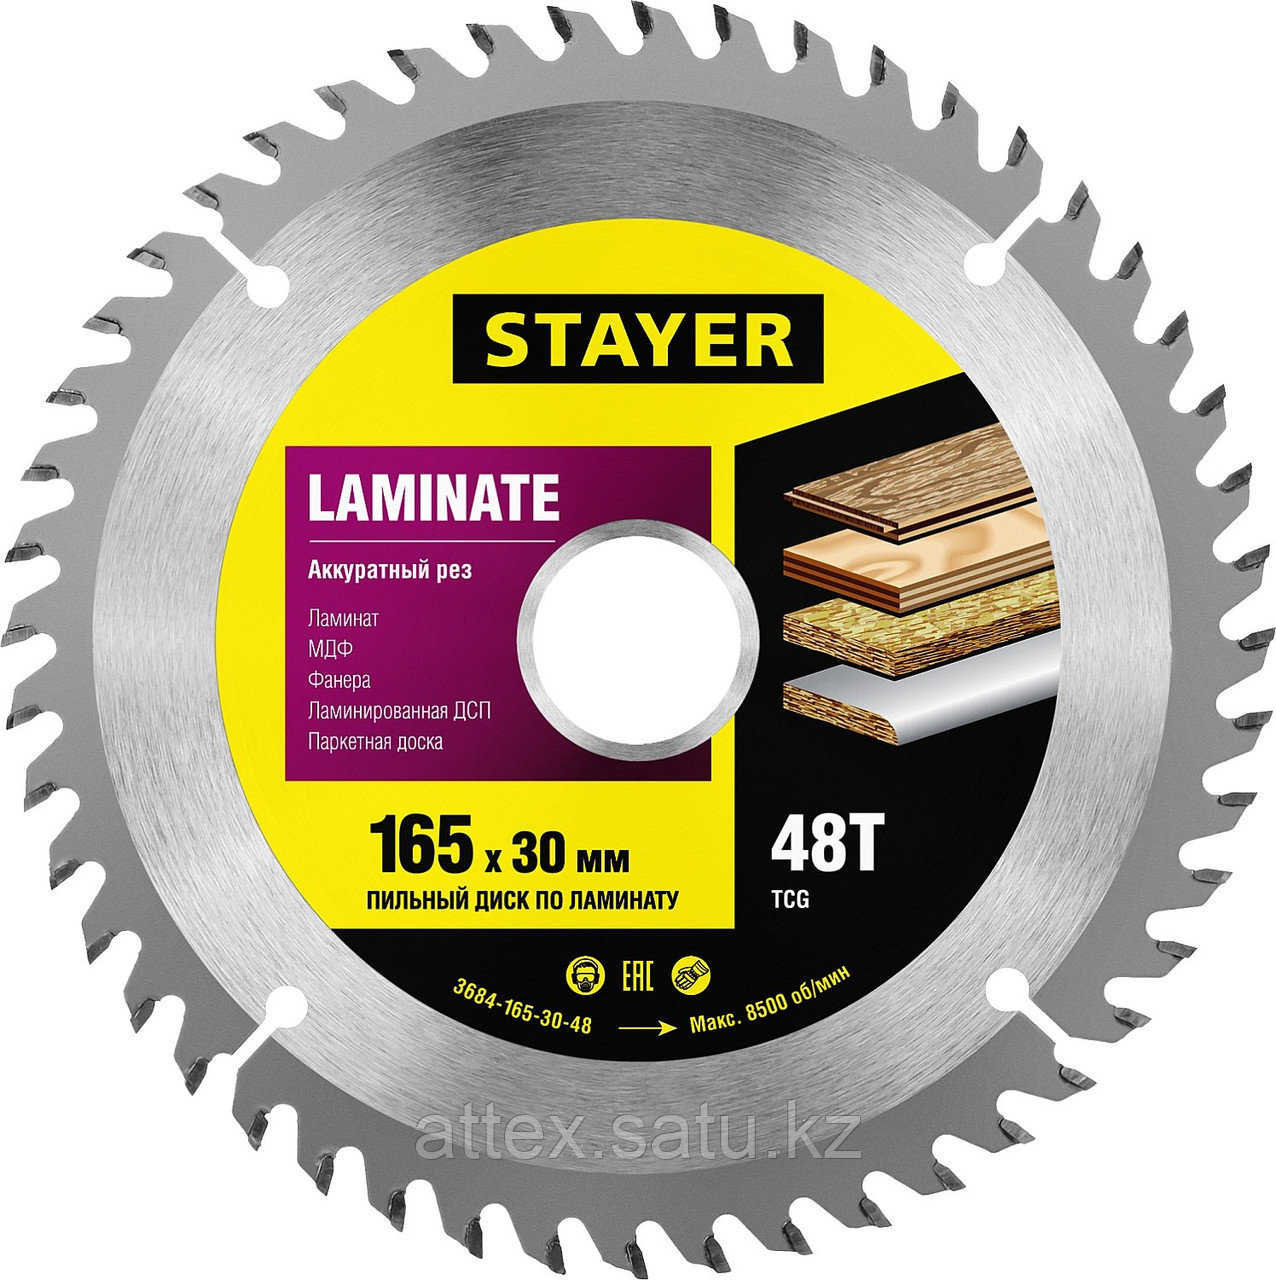 Пильный диск "Laminate line" для ламината, 165x30, 48Т, STAYER  3684-165-30-48